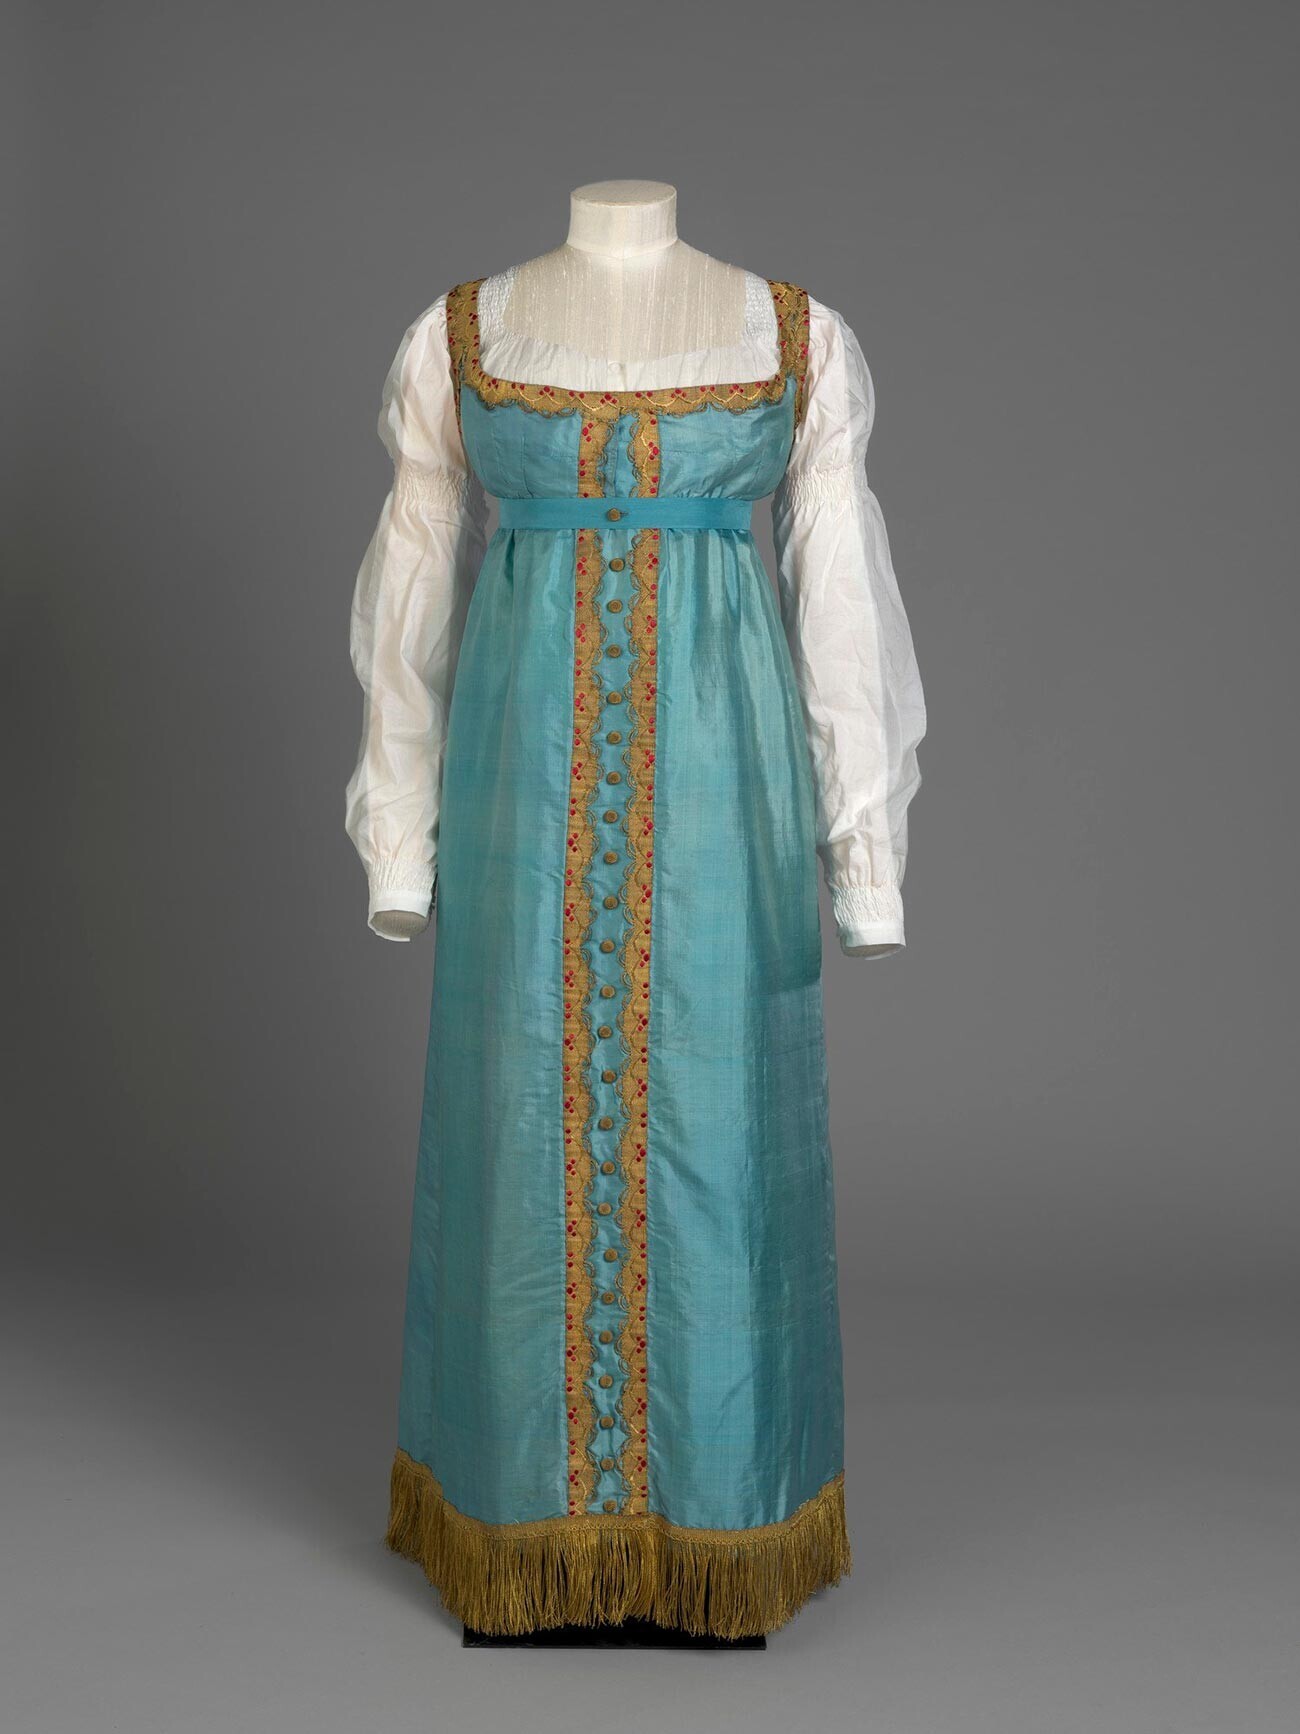 Vestido em estilo russo pertencente à princesa Charlotte, em torno de 1817
